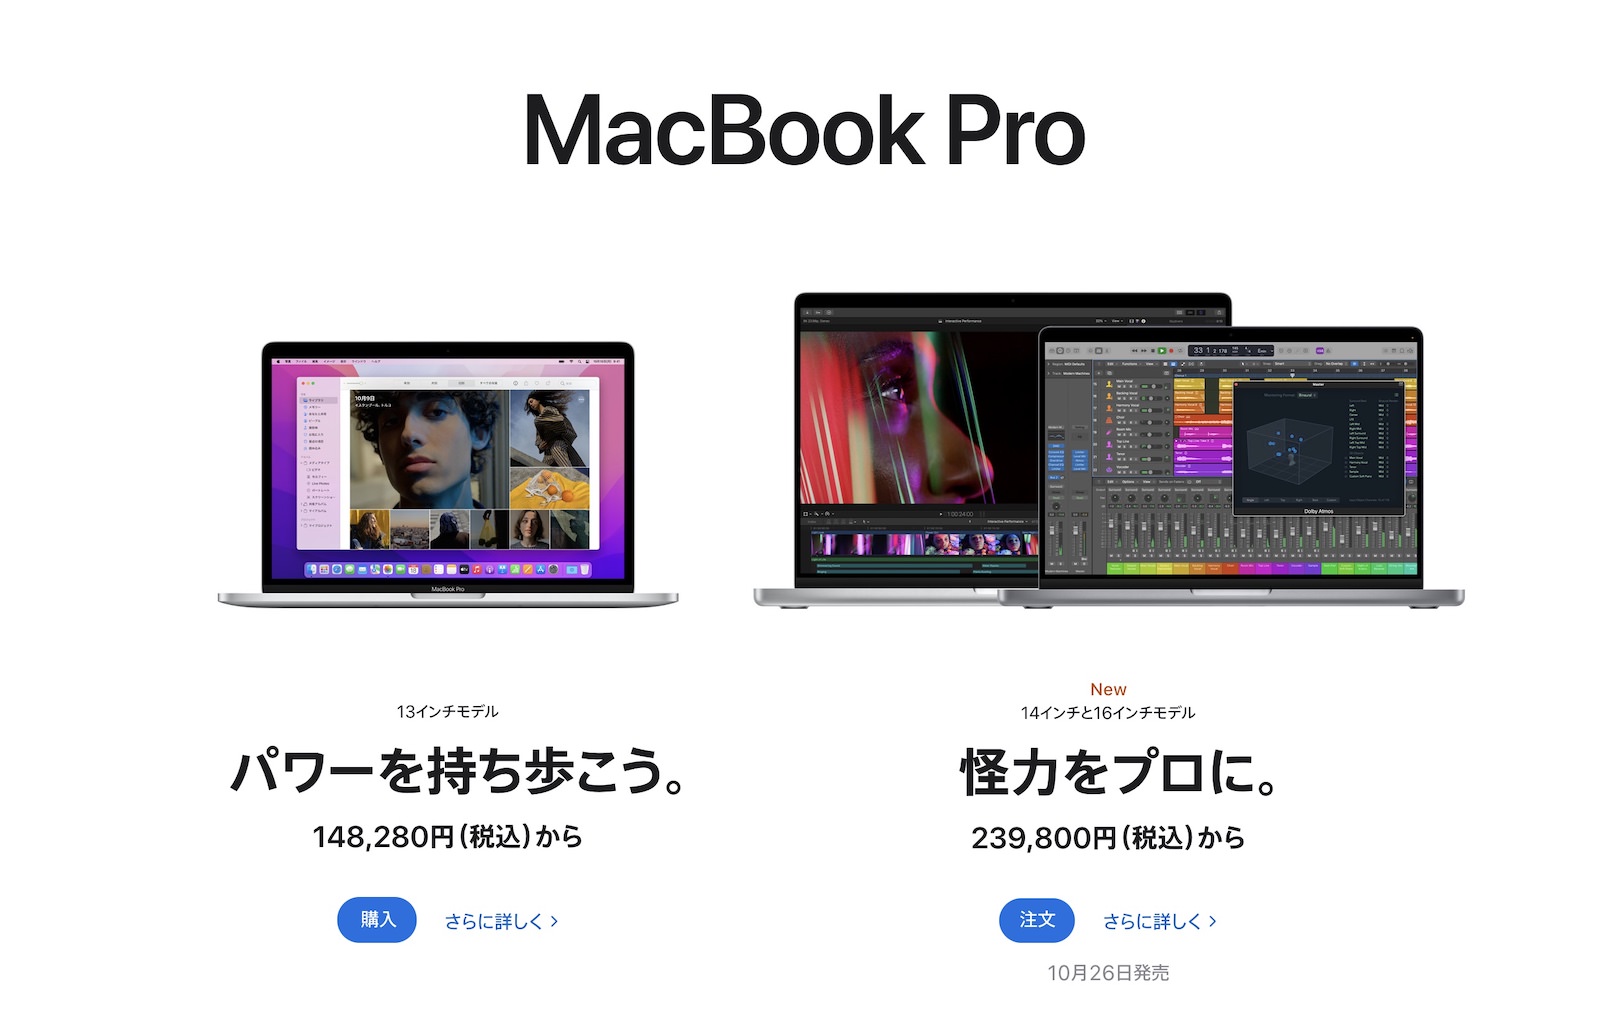 Macbook pro lineup